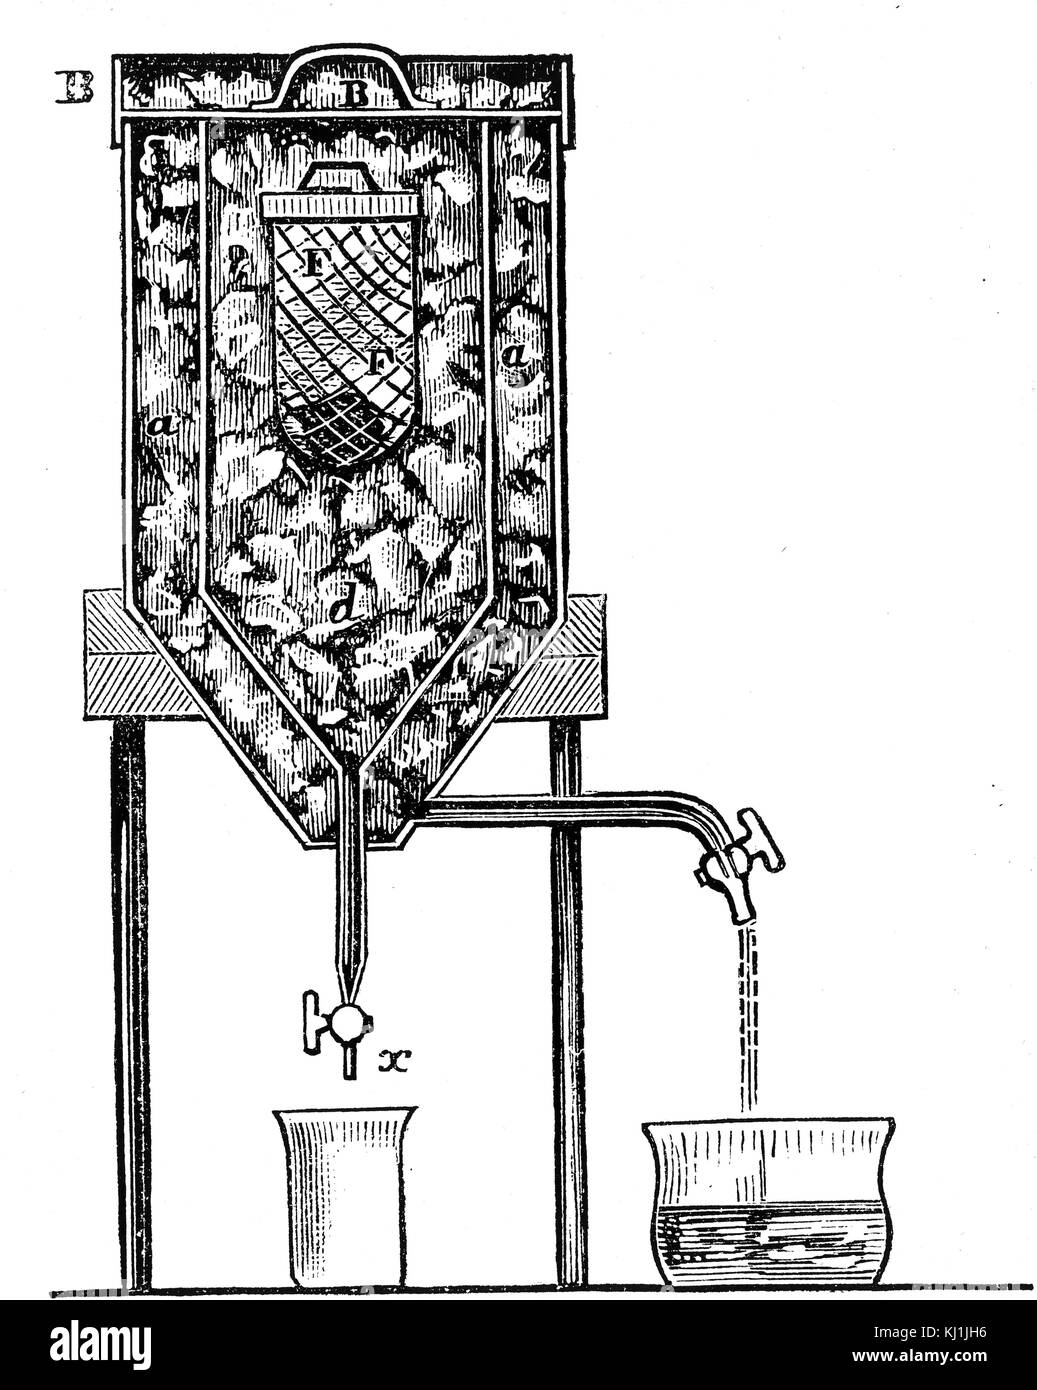 Gravur, Lavoisier und Laplace Kalorimeter, die er verwendet, um die Menge an Wärme, die durch Verbrennung entstehen zu bestimmen. Vom 19. Jahrhundert Stockfoto